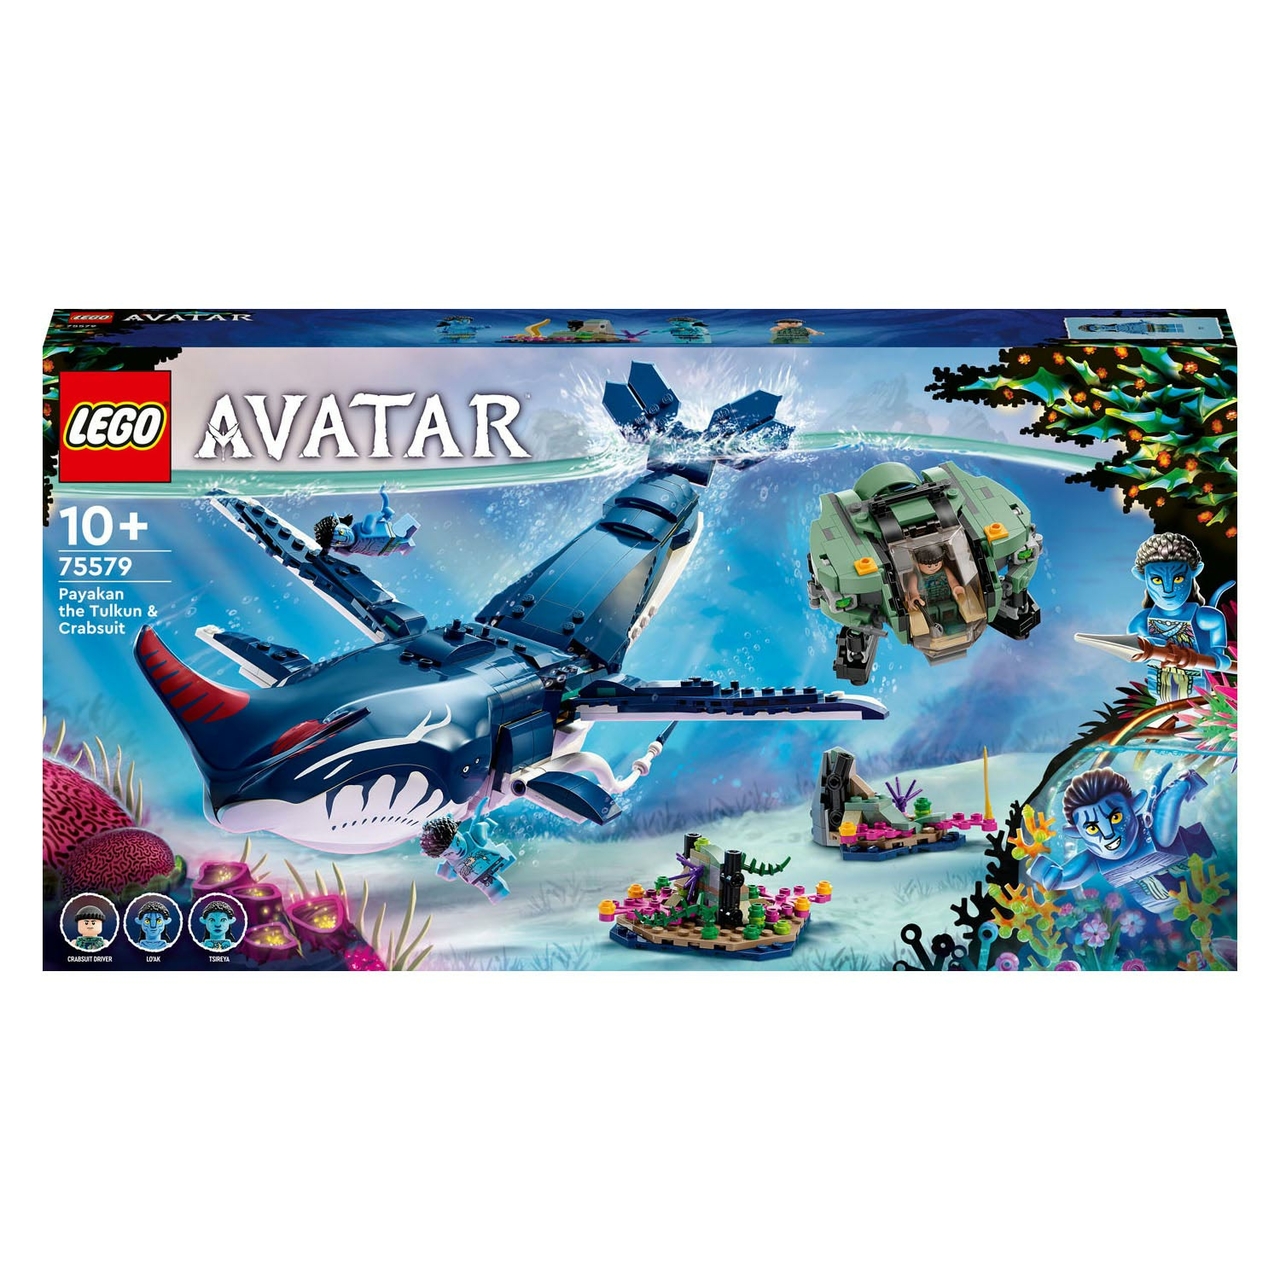 Monografie Collectief omringen LEGO Avatar 75579 Payakan the Tulkun & Crab Suit - Het Speelgoedpaleis